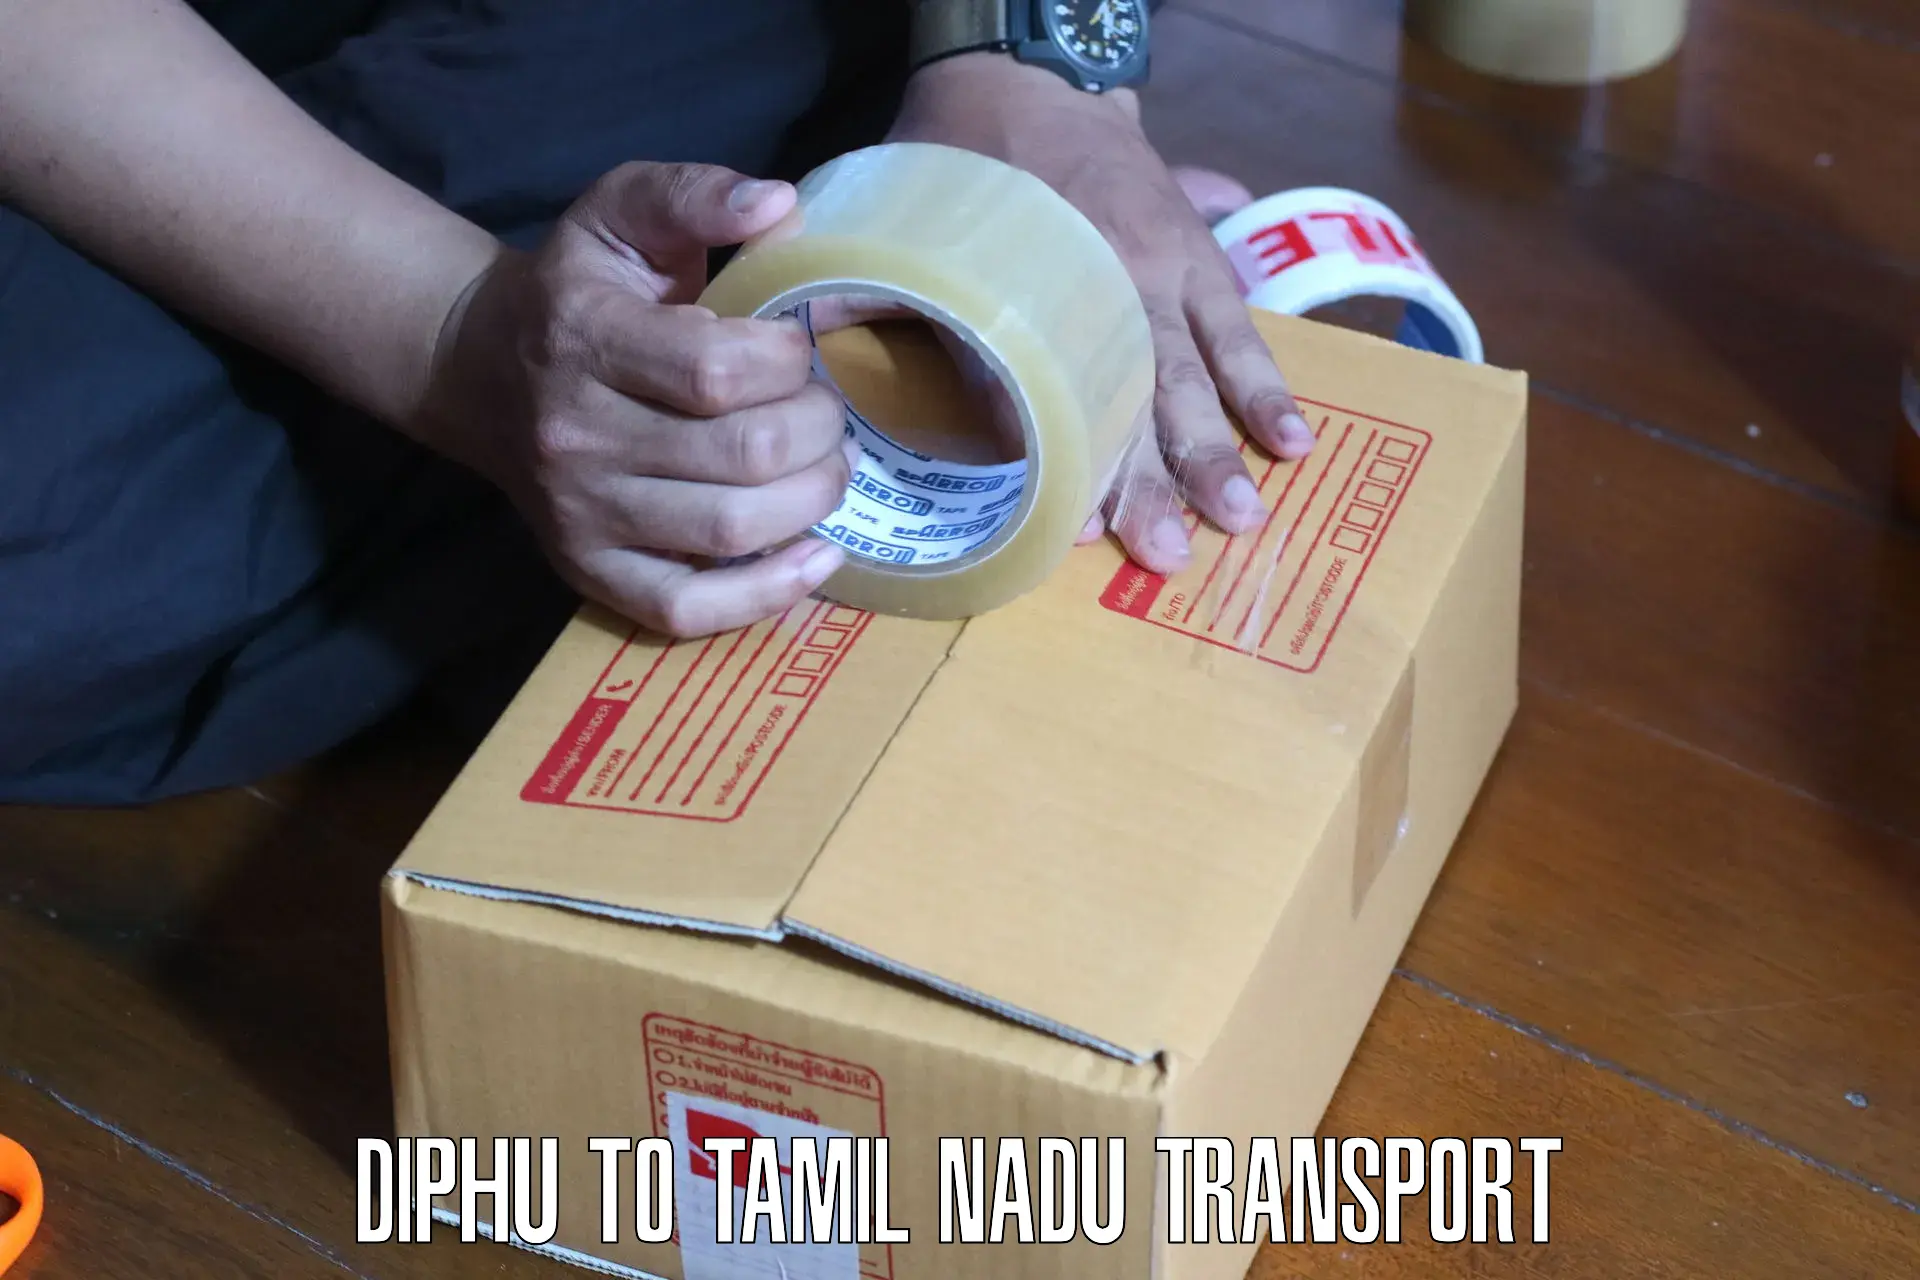 Bike transport service Diphu to Avadi